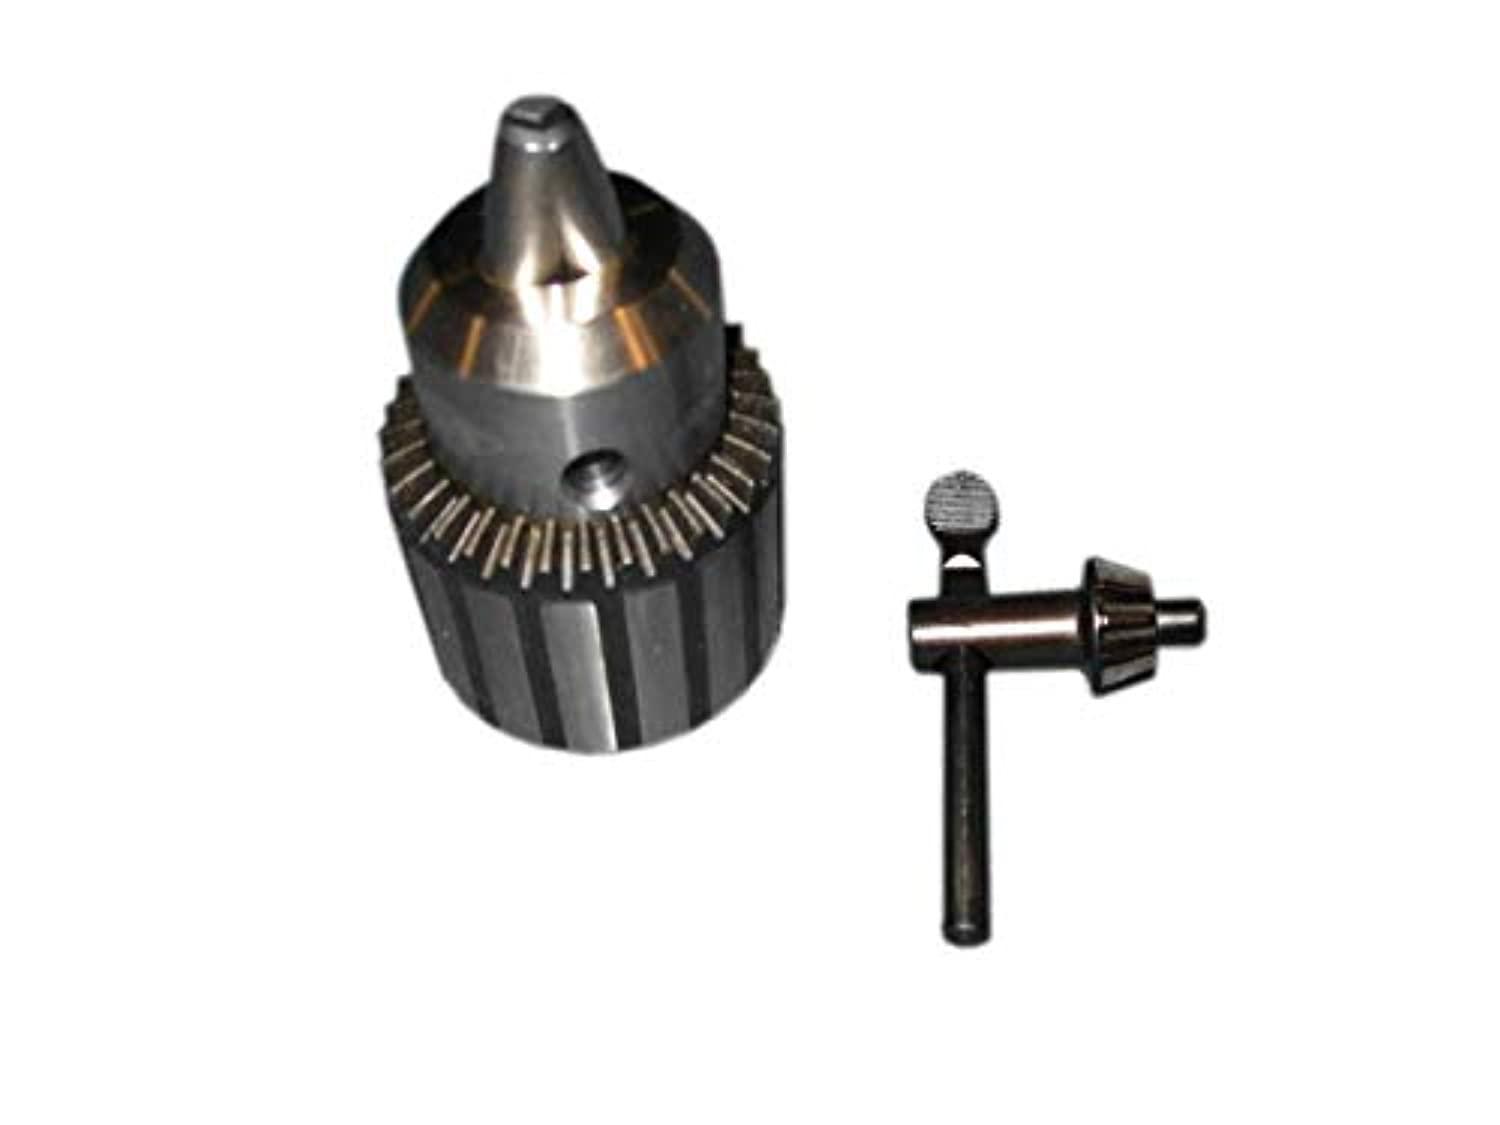 Power Tools Parts 1/2" drill chuck fits sears craftsman drill press 137.219000